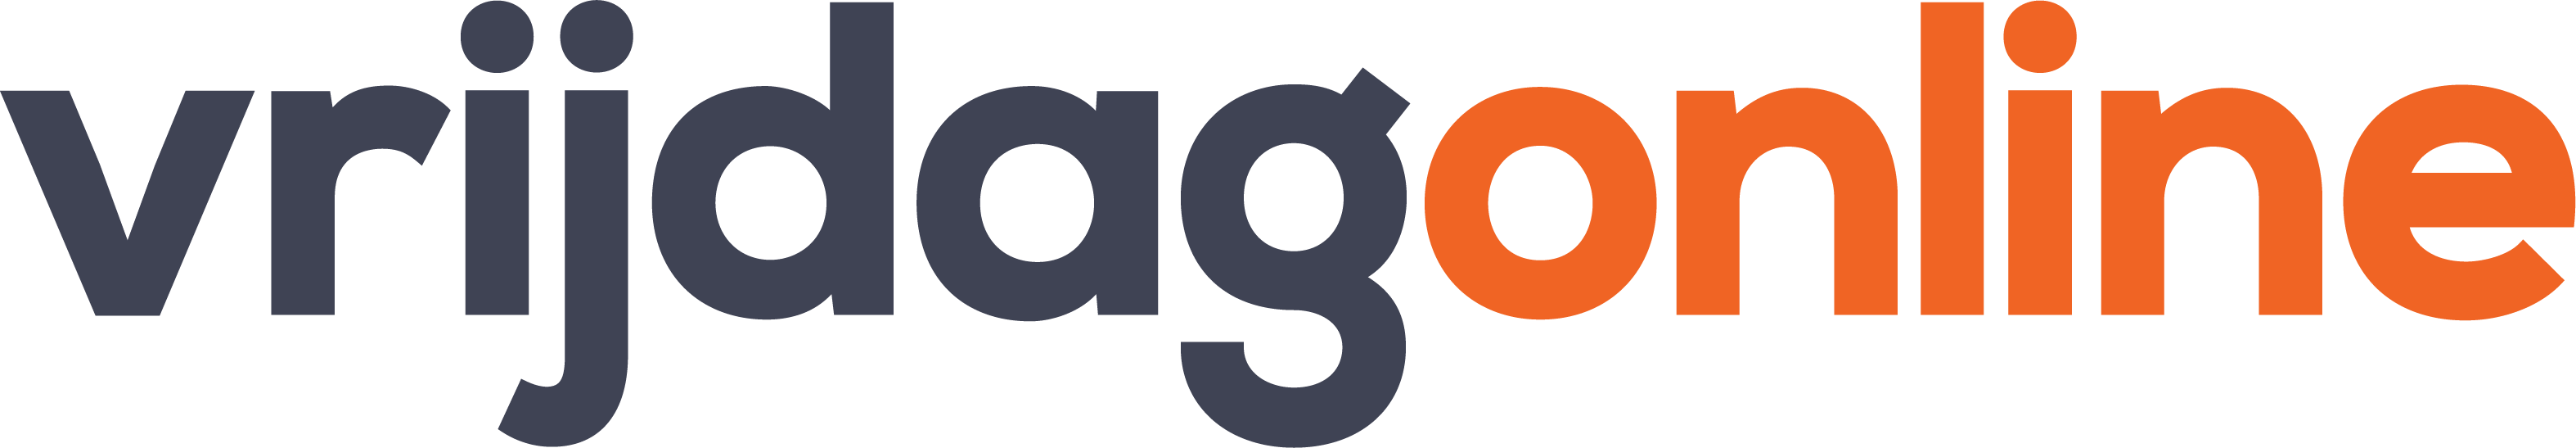 Vrijdagonline - logo